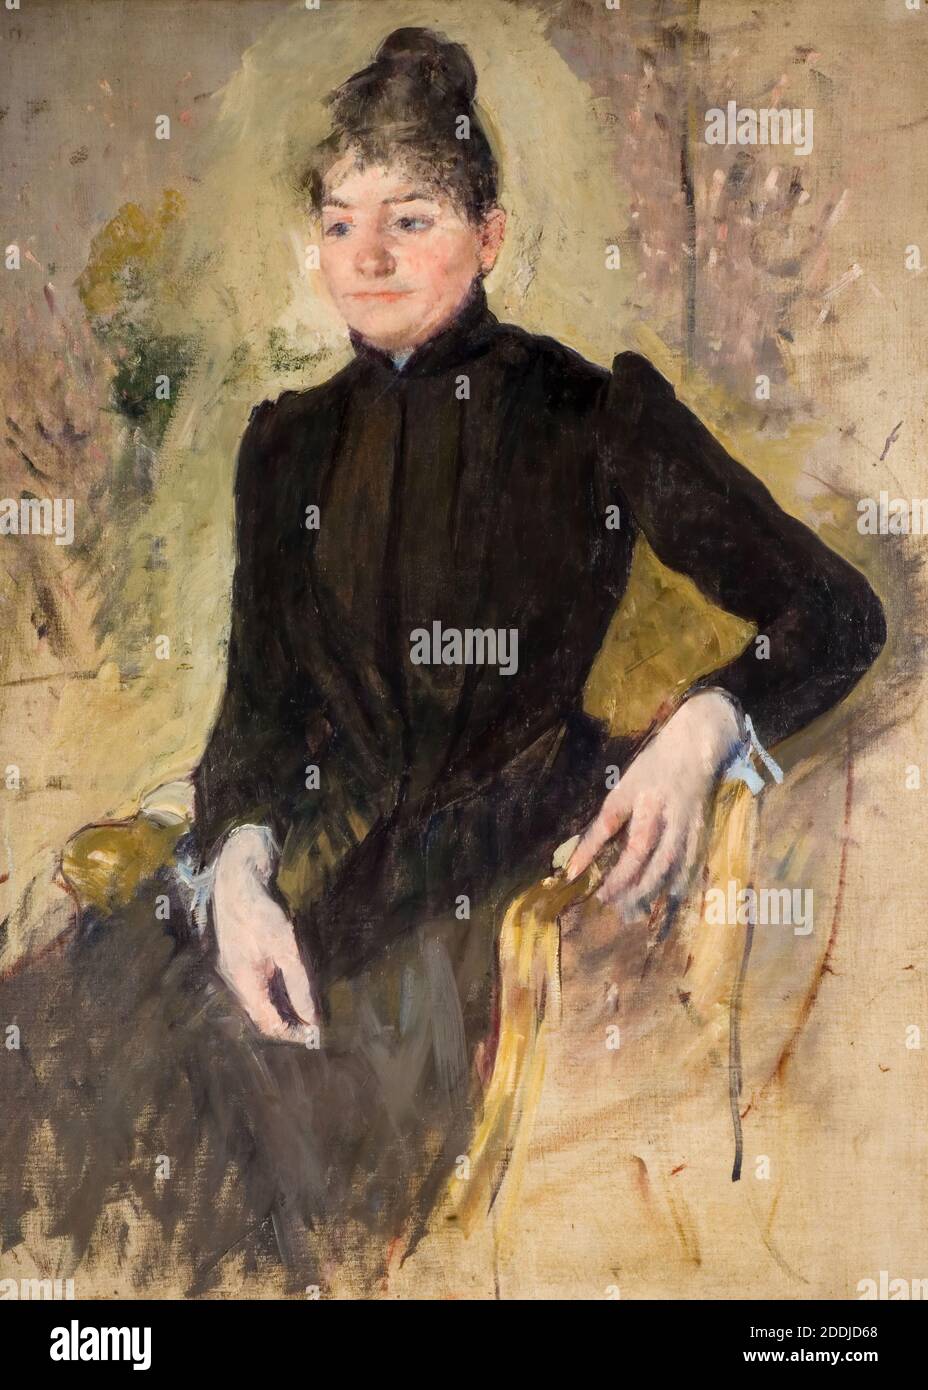 Retrato de una mujer, 1881-83 por: Mary Cassatt, Retrato, Movimiento artístico, impresionismo Foto de stock